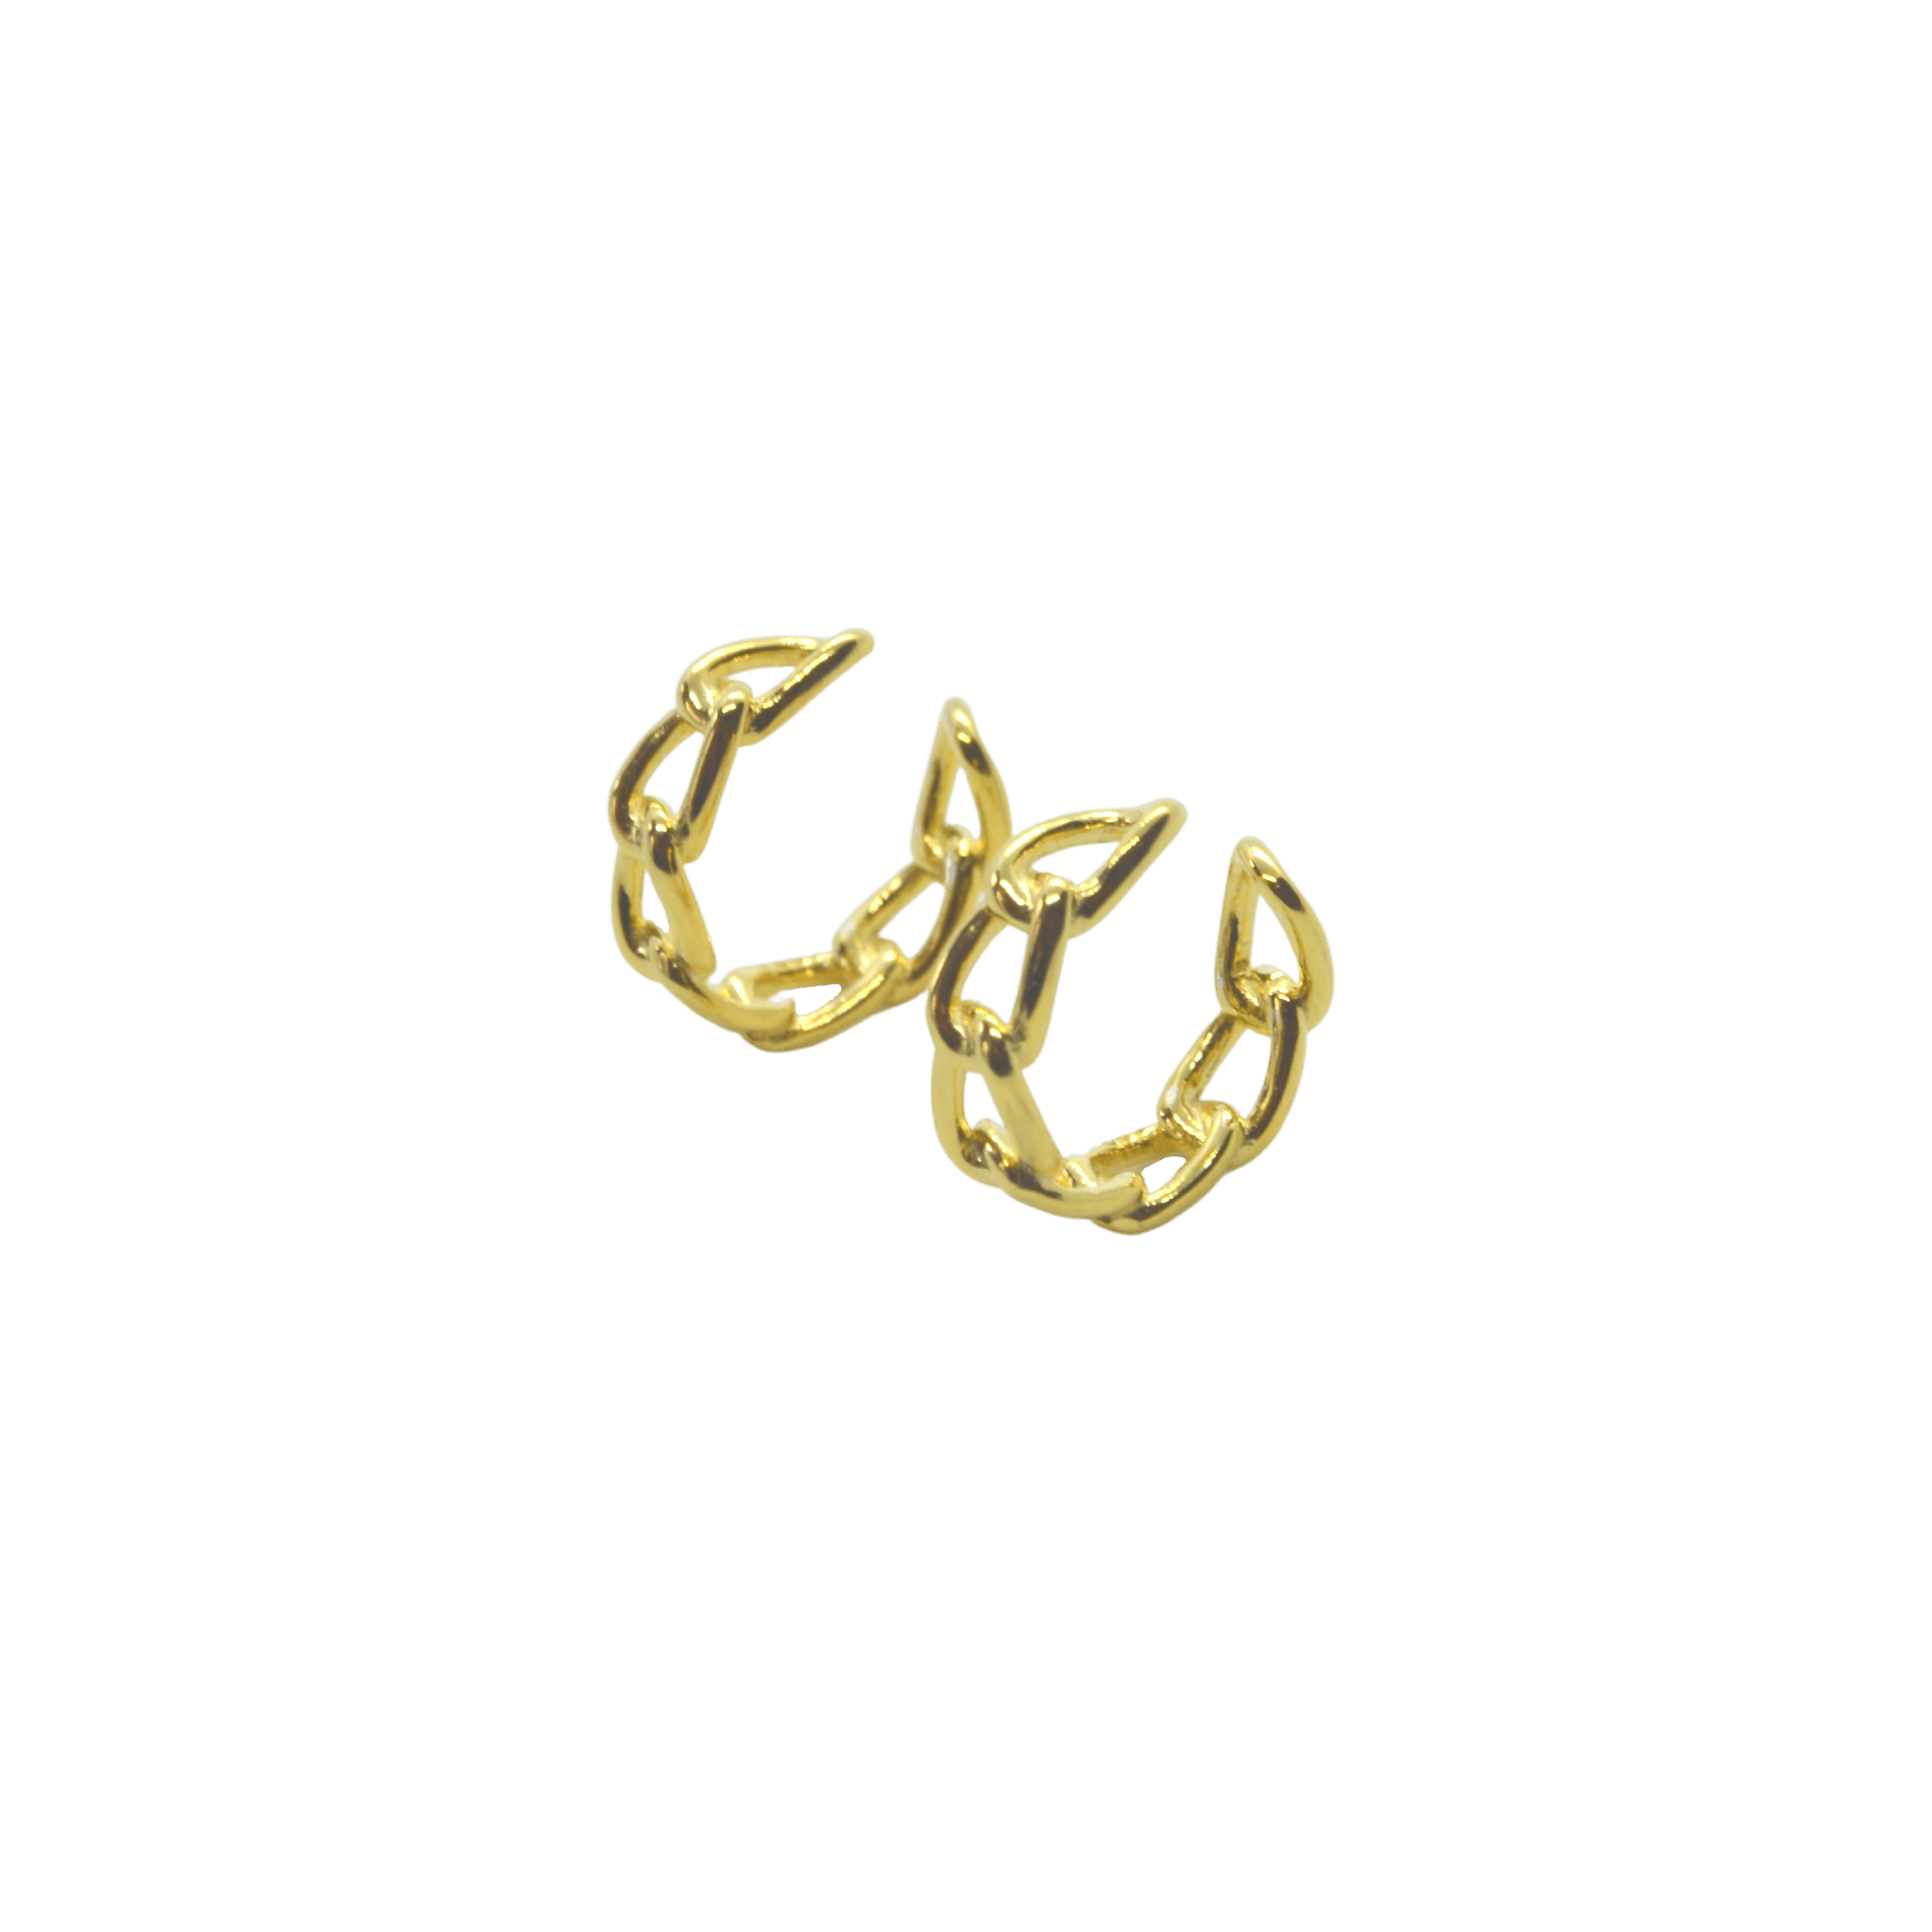 Chain Sterling Silver Ear Cuff - Spero London